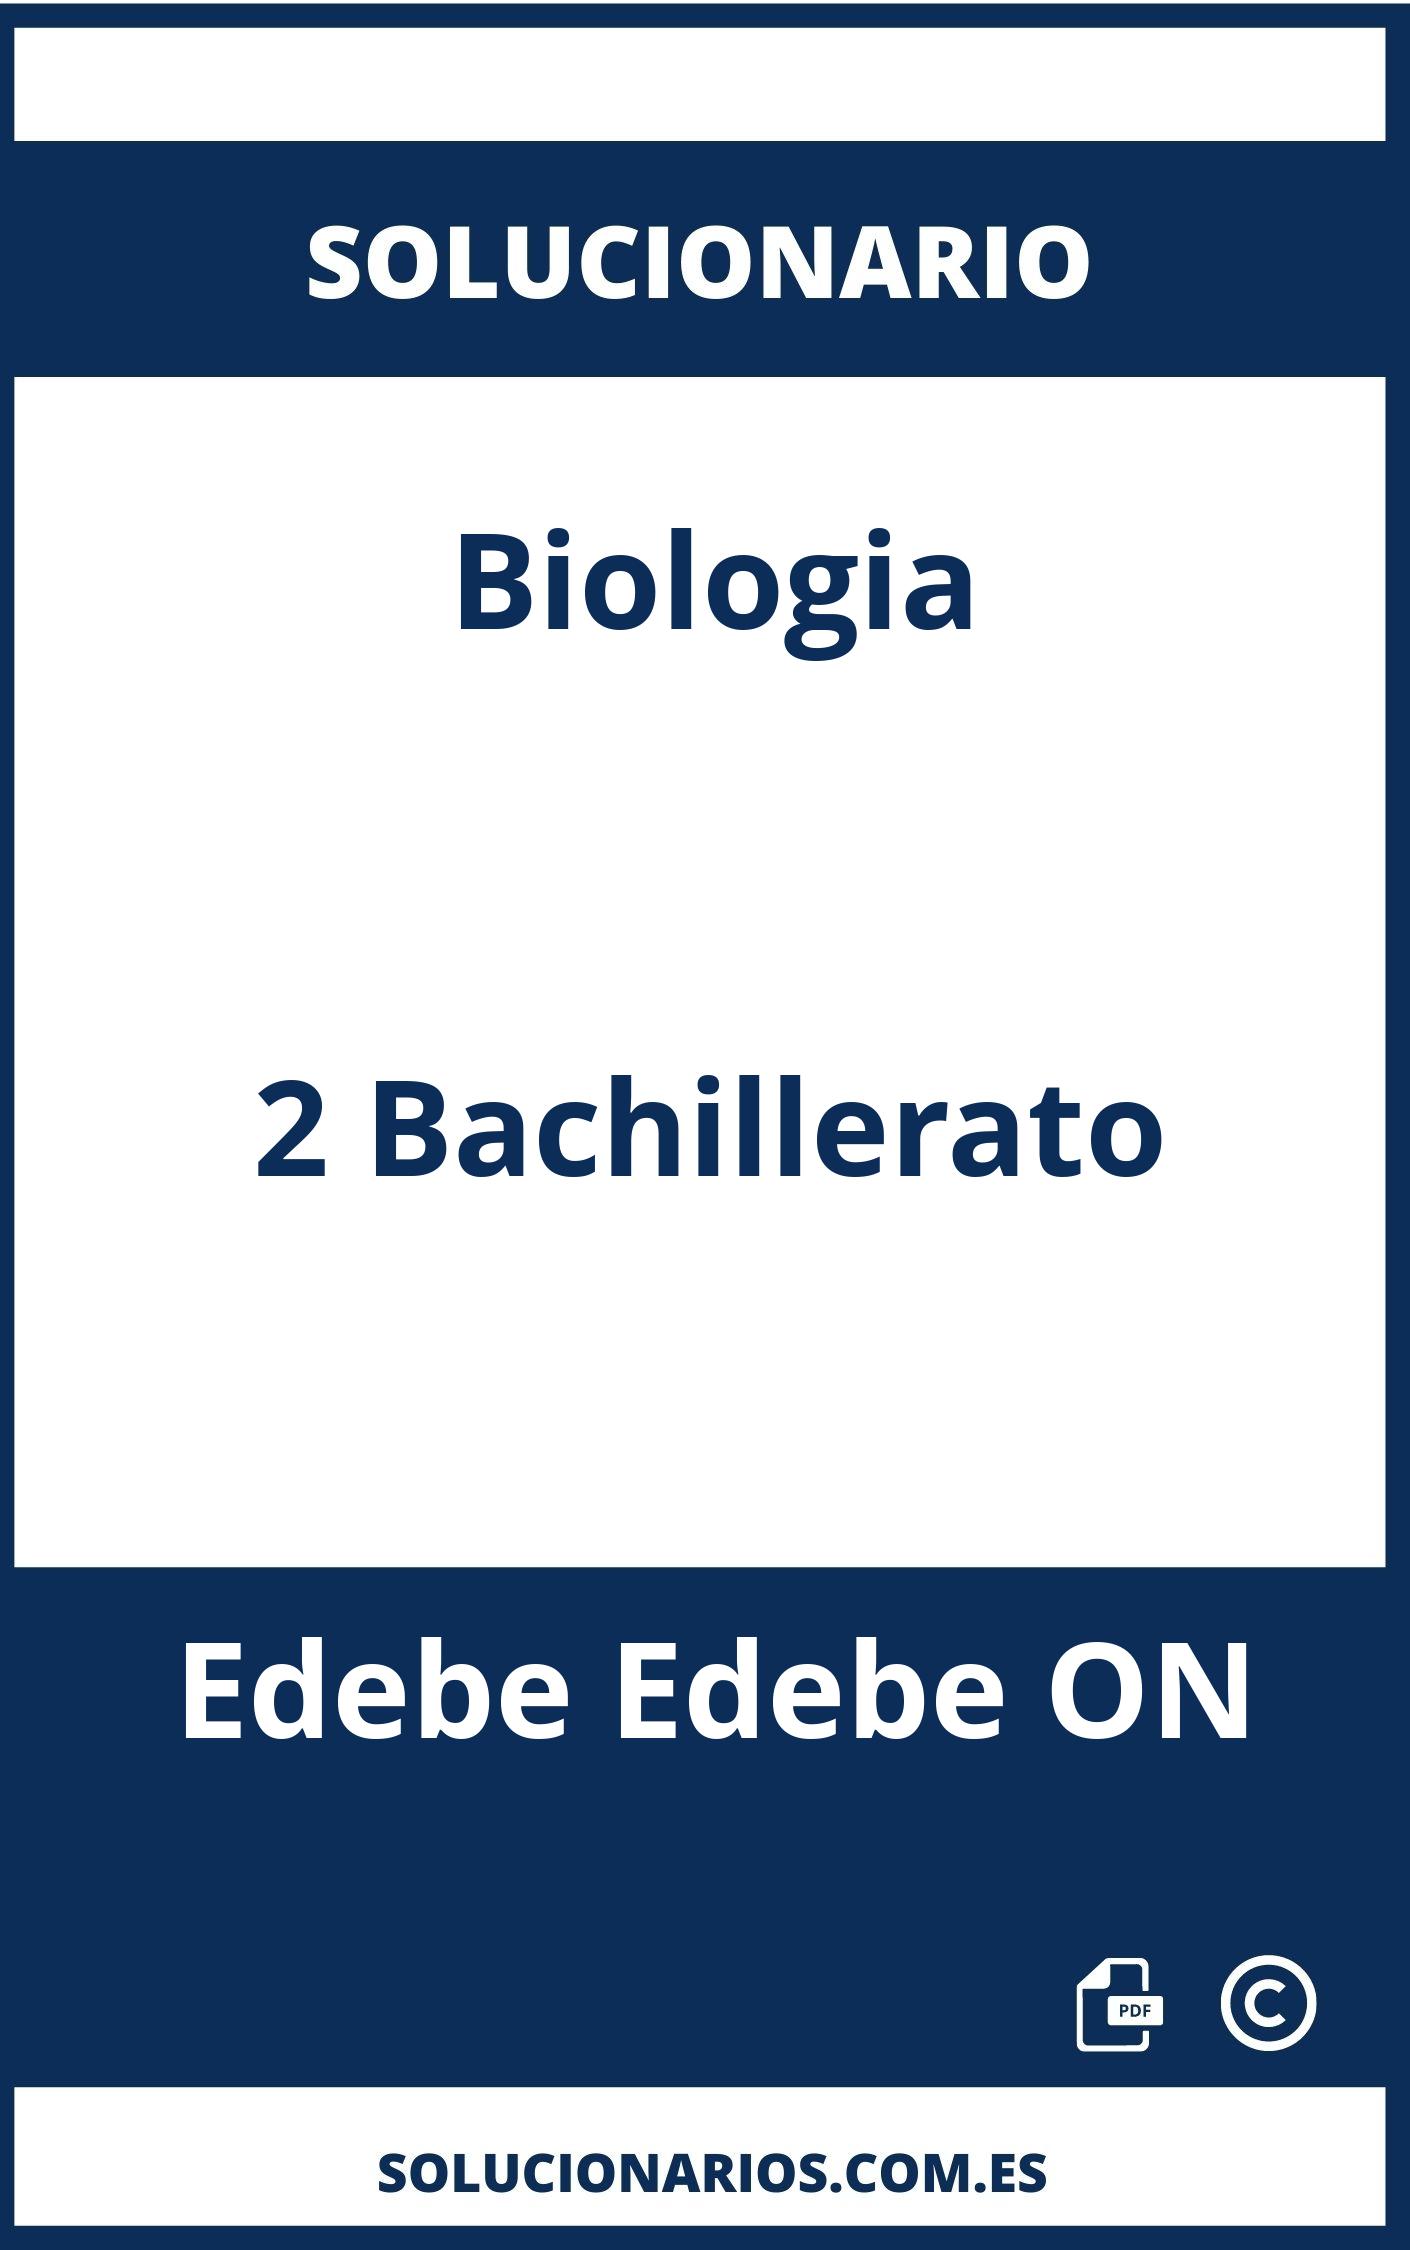 Solucionario Biologia 2 Bachillerato Edebe Edebe ON